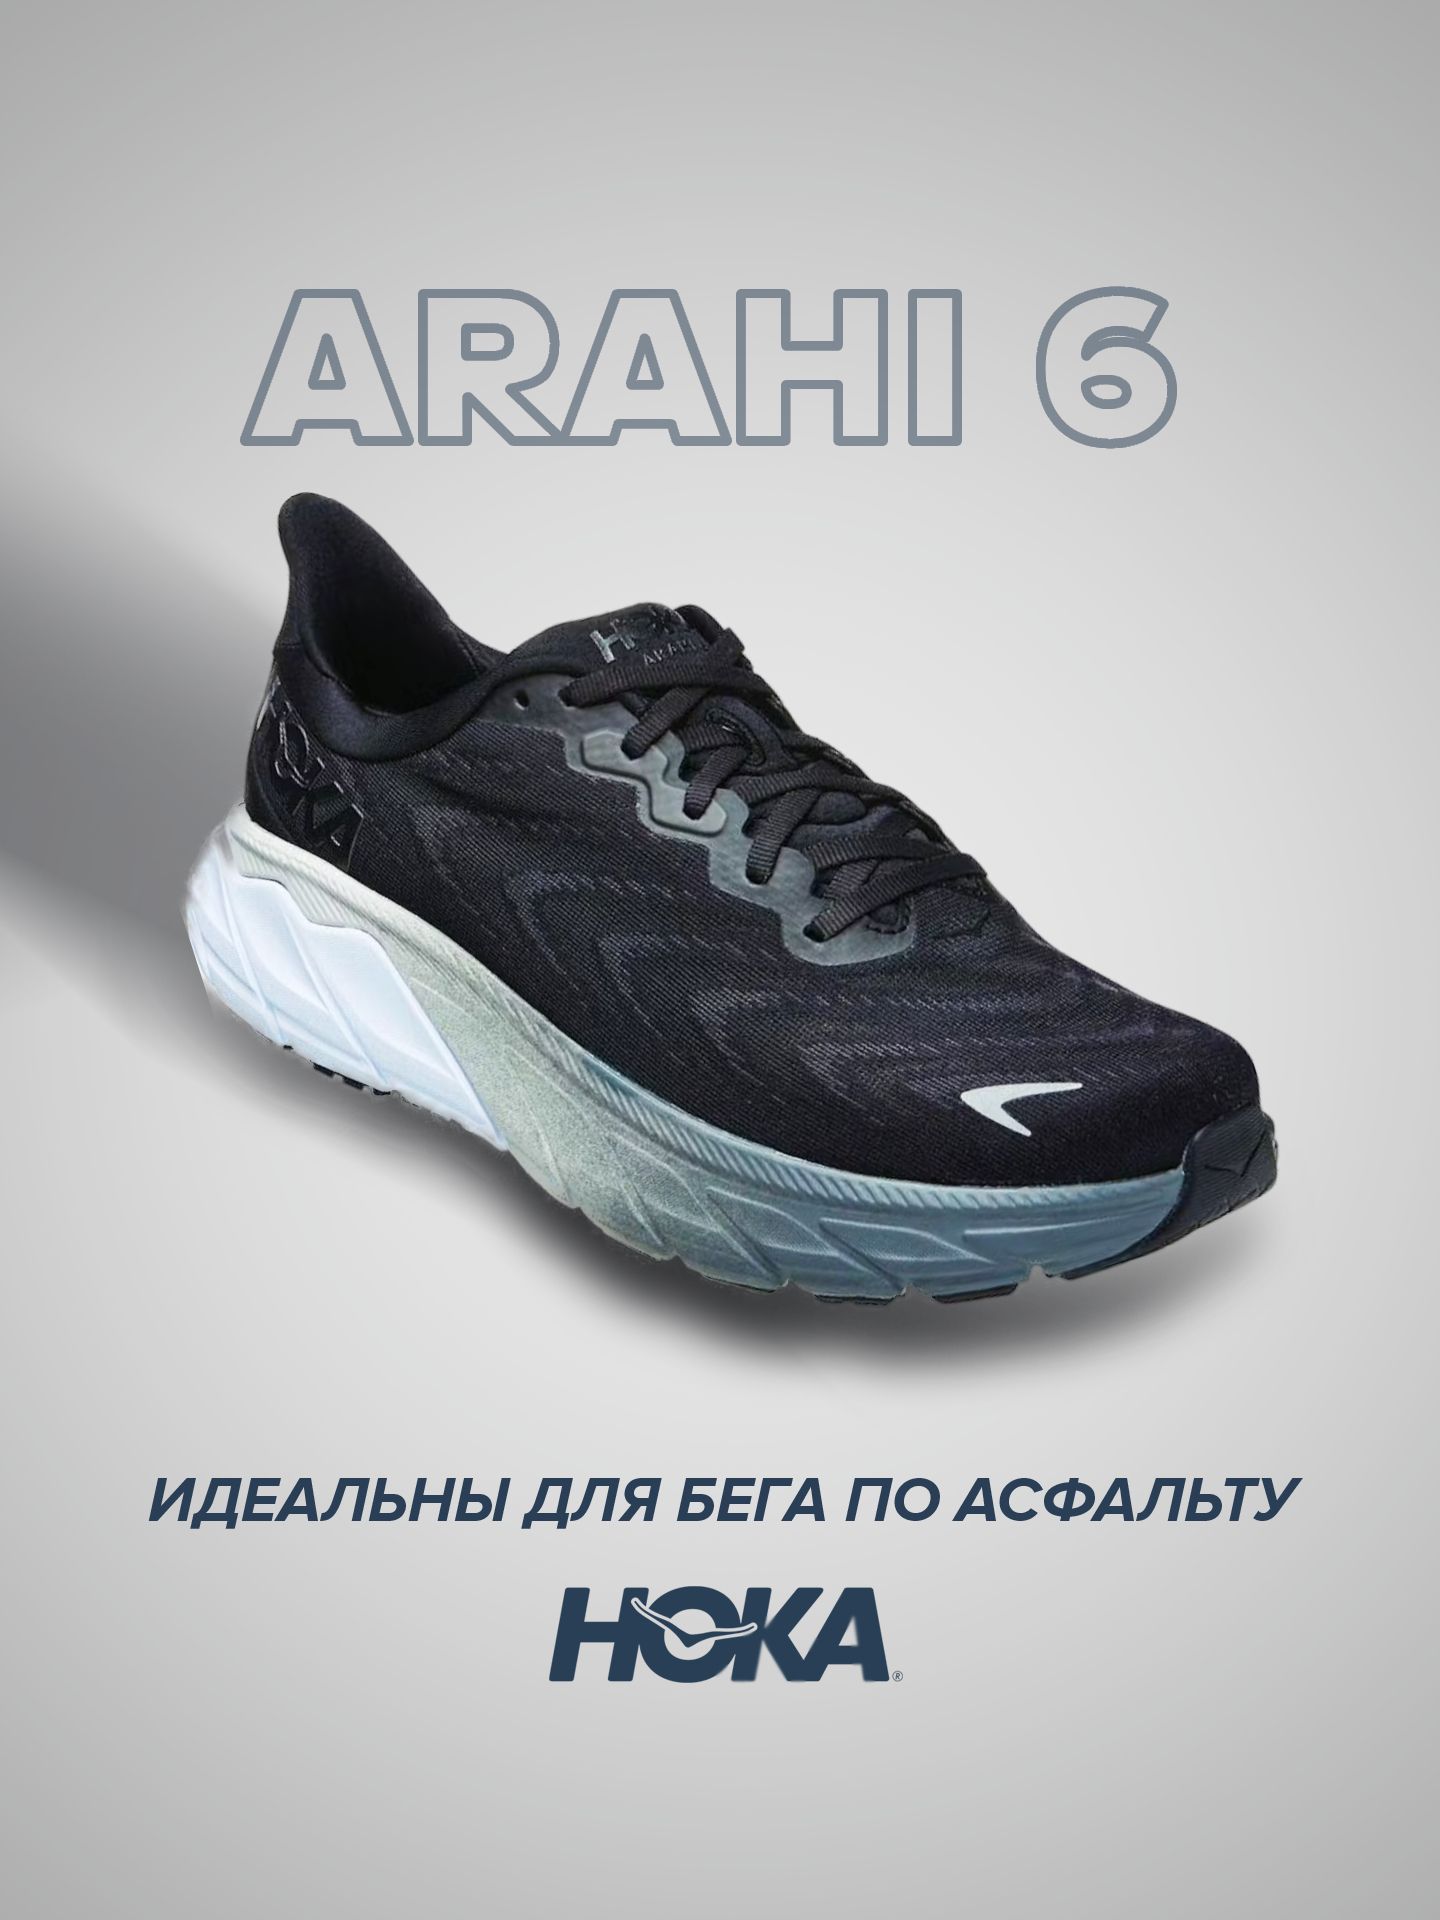 Спортивные кроссовки женские Hoka Arahi 6 черные 7.5 US